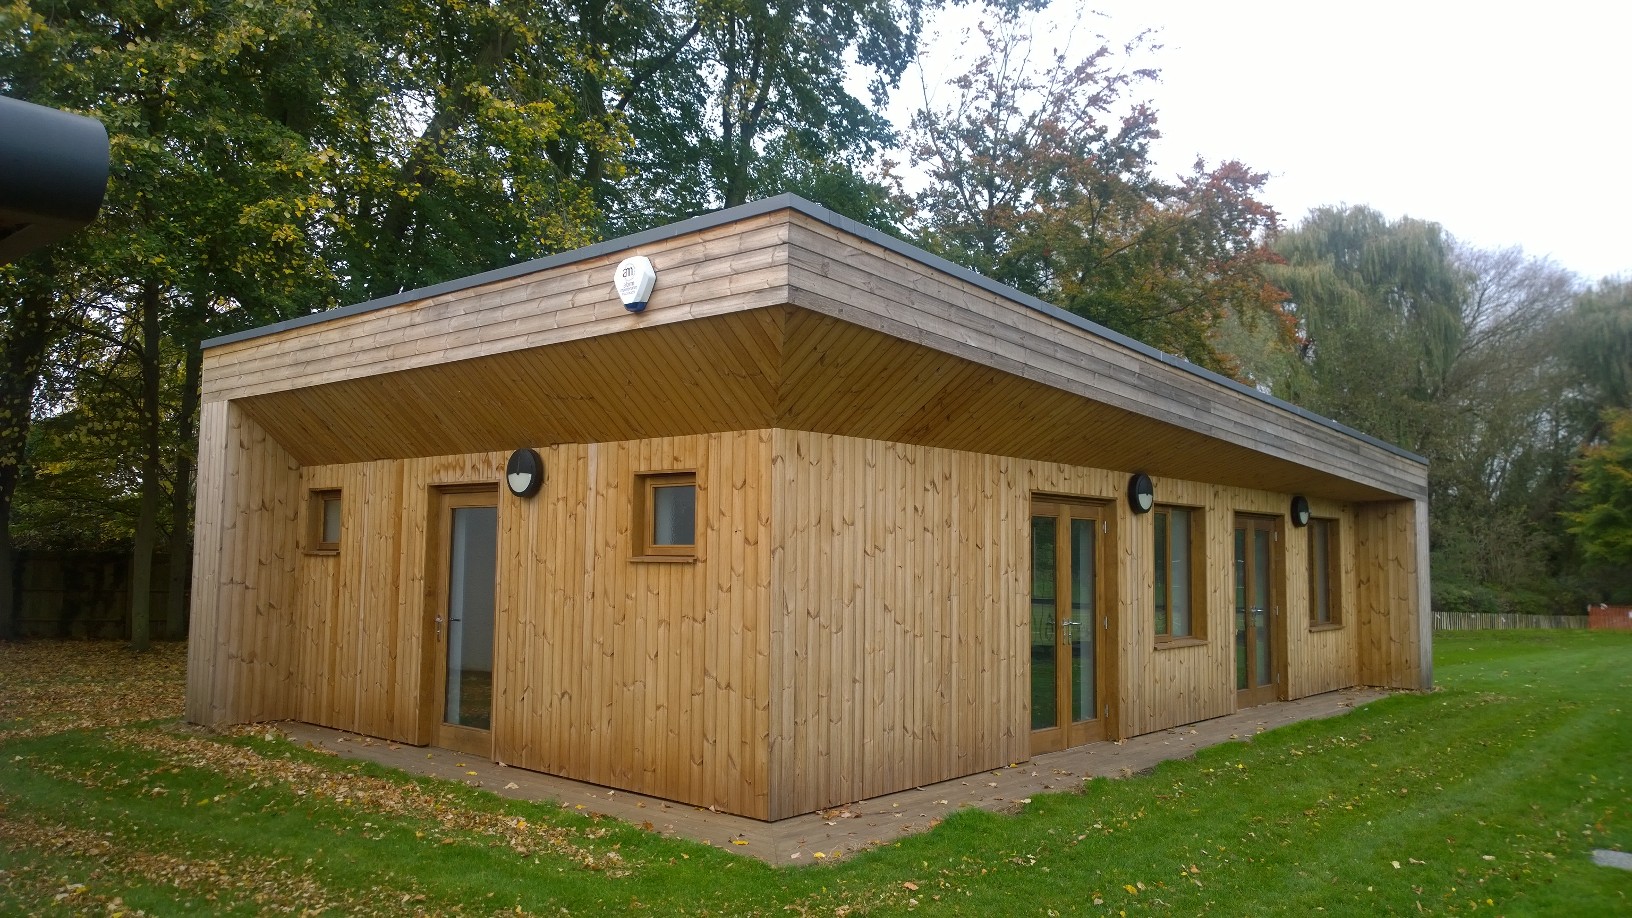 Eco-building - Outdoor Classroom Stephen Perse School, Cambridge